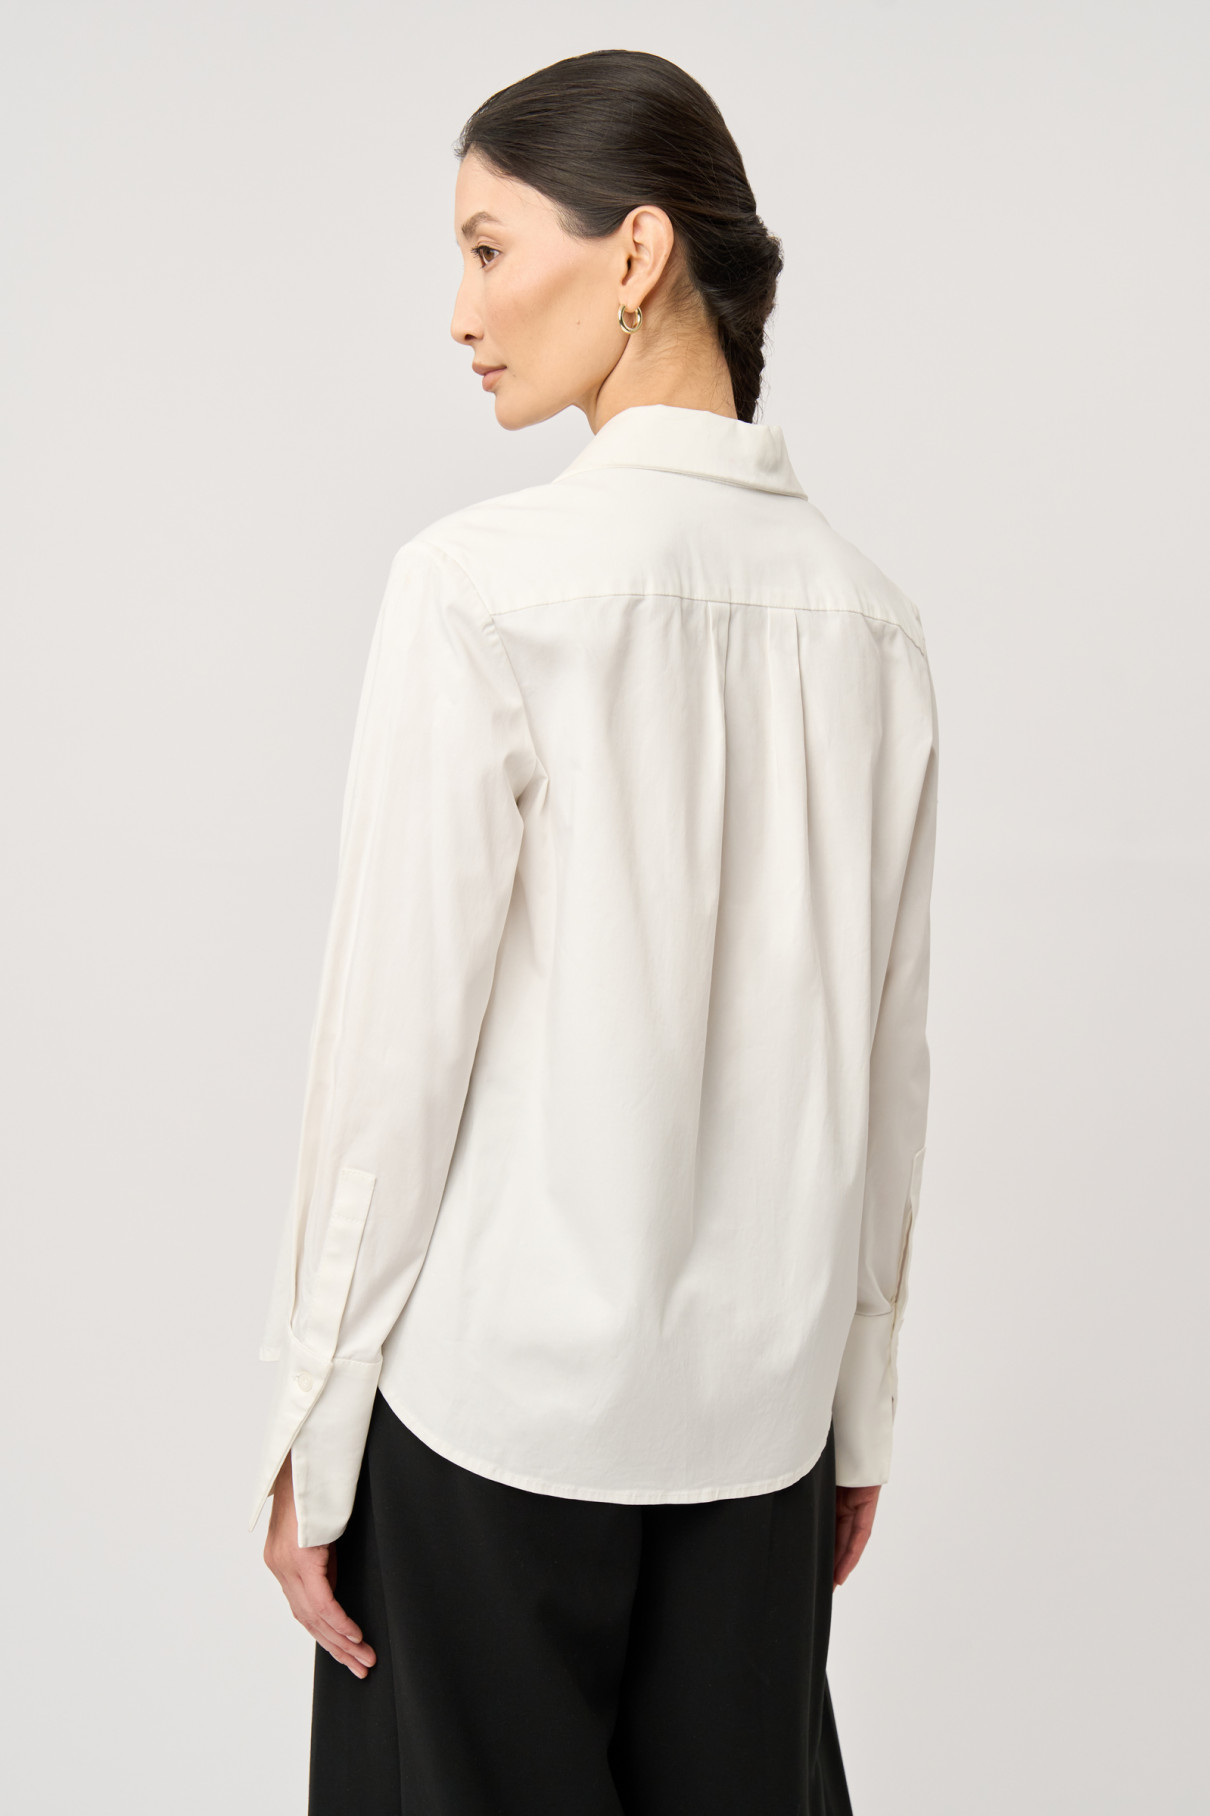 Белая рубашка из хлопка , Белый, арт. FR21-ЛМ-3-бл-2 купить в интернет-магазине